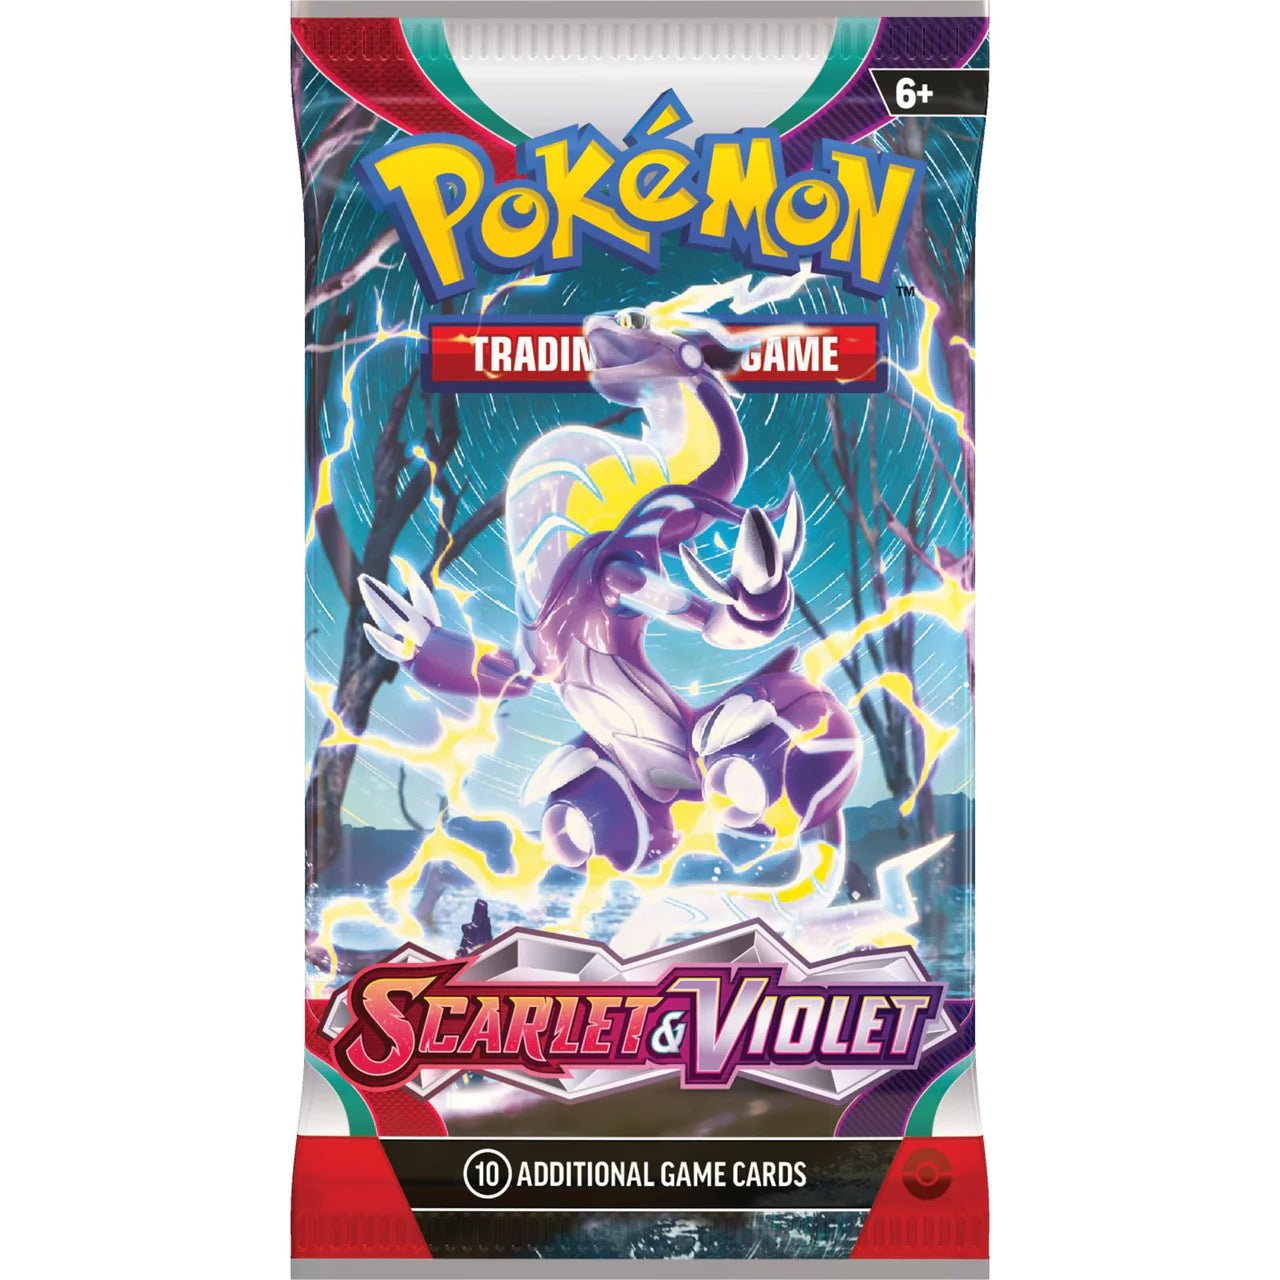 Pokémon – Scarlet Violet – Booster (Individual pack)